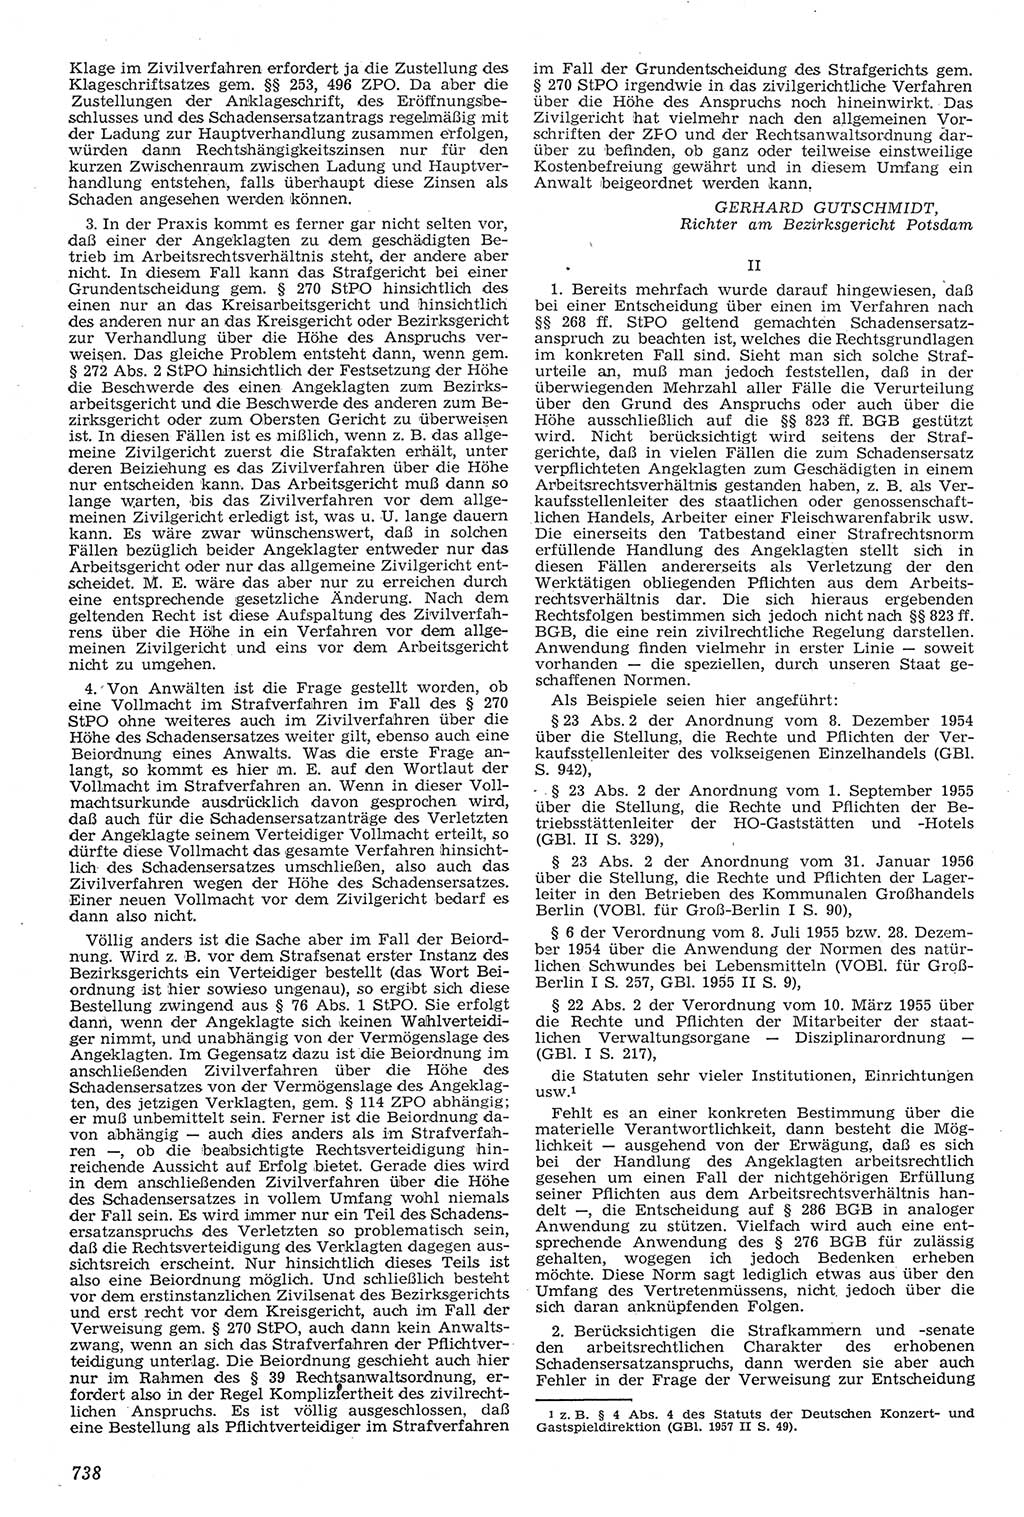 Neue Justiz (NJ), Zeitschrift für Recht und Rechtswissenschaft [Deutsche Demokratische Republik (DDR)], 11. Jahrgang 1957, Seite 738 (NJ DDR 1957, S. 738)